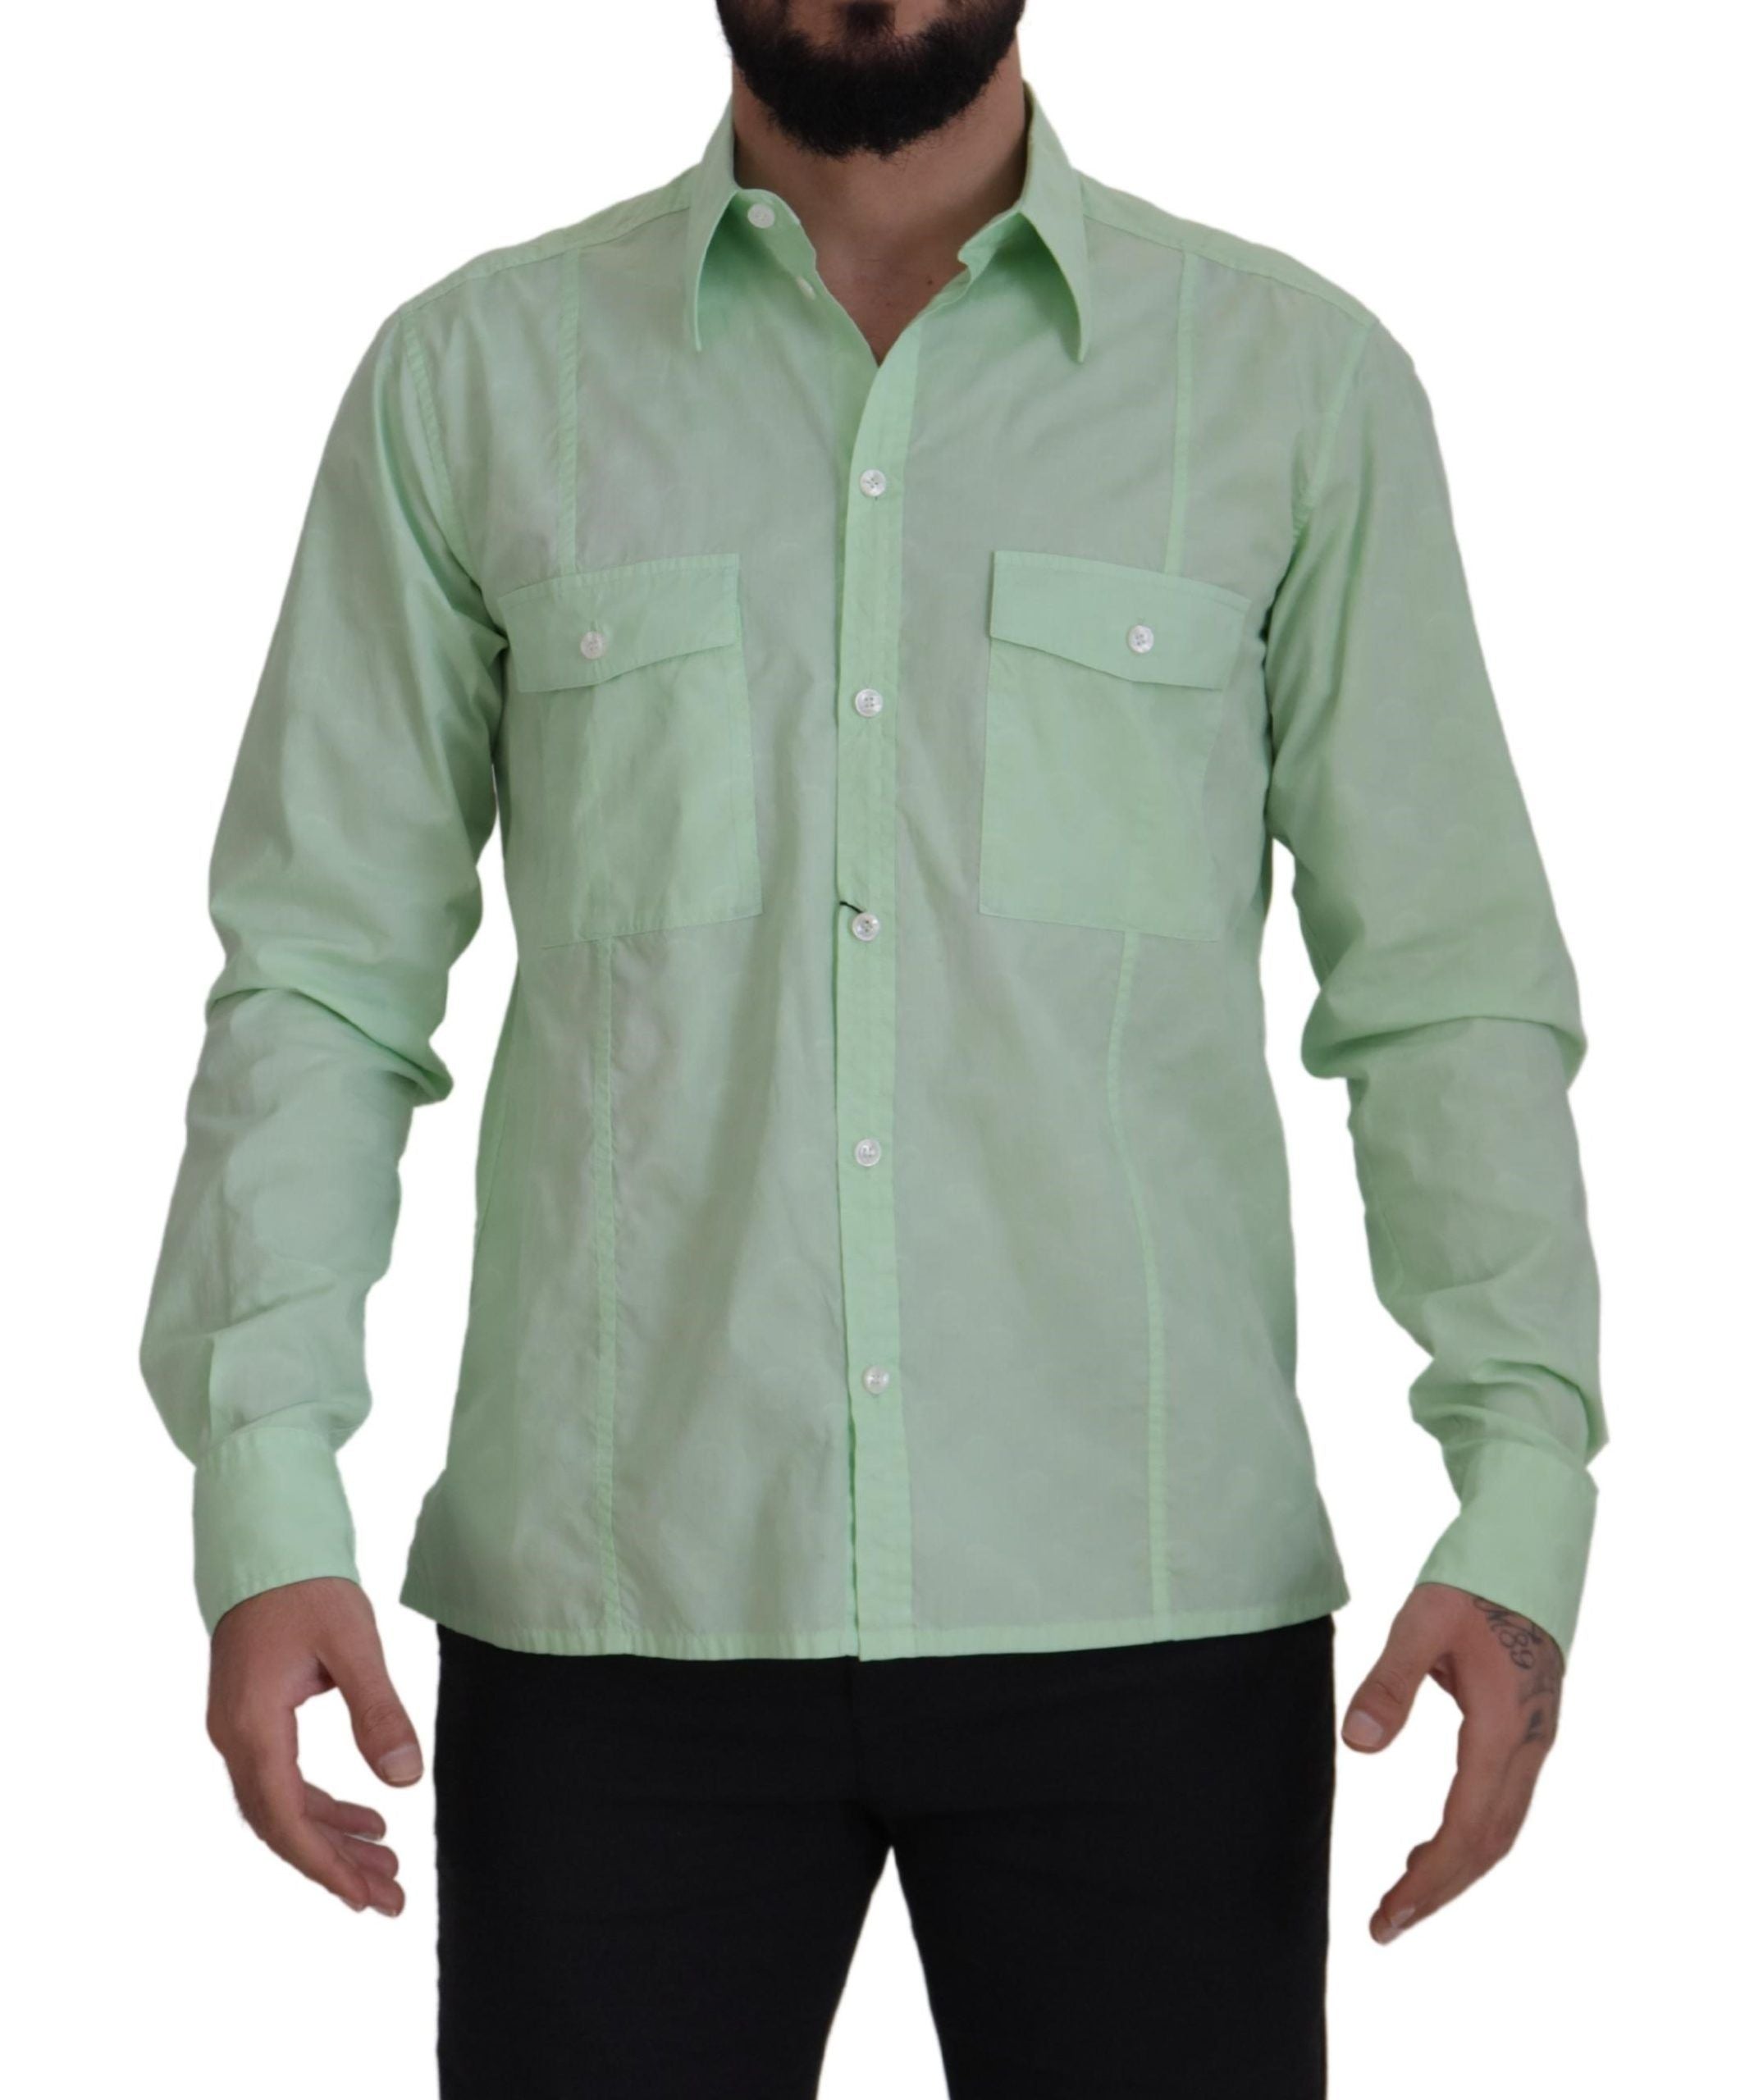 Dolce & Gabbana Camisa casual con botones en verde menta y corte slim